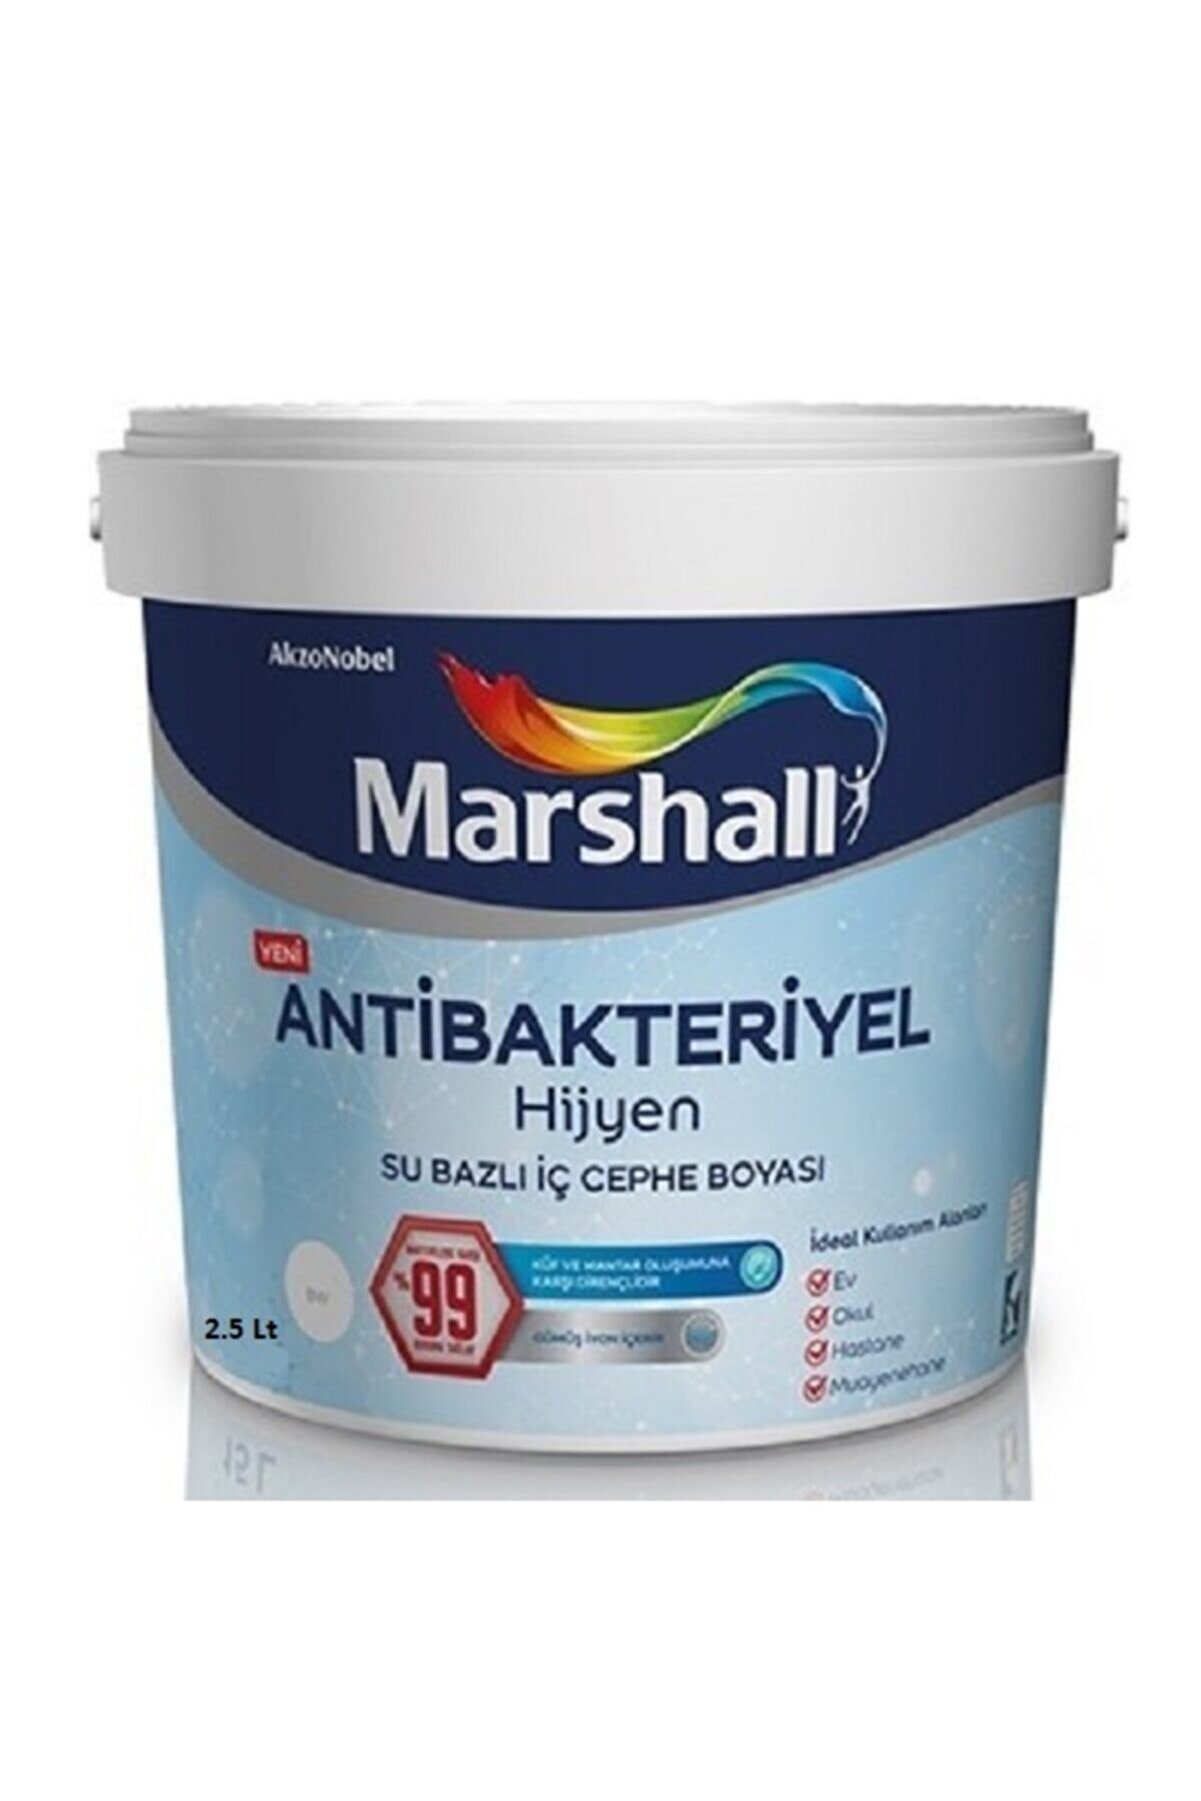 Marshall Antibakteriyel Hijyen 2,5 lt Mısır Koçanı